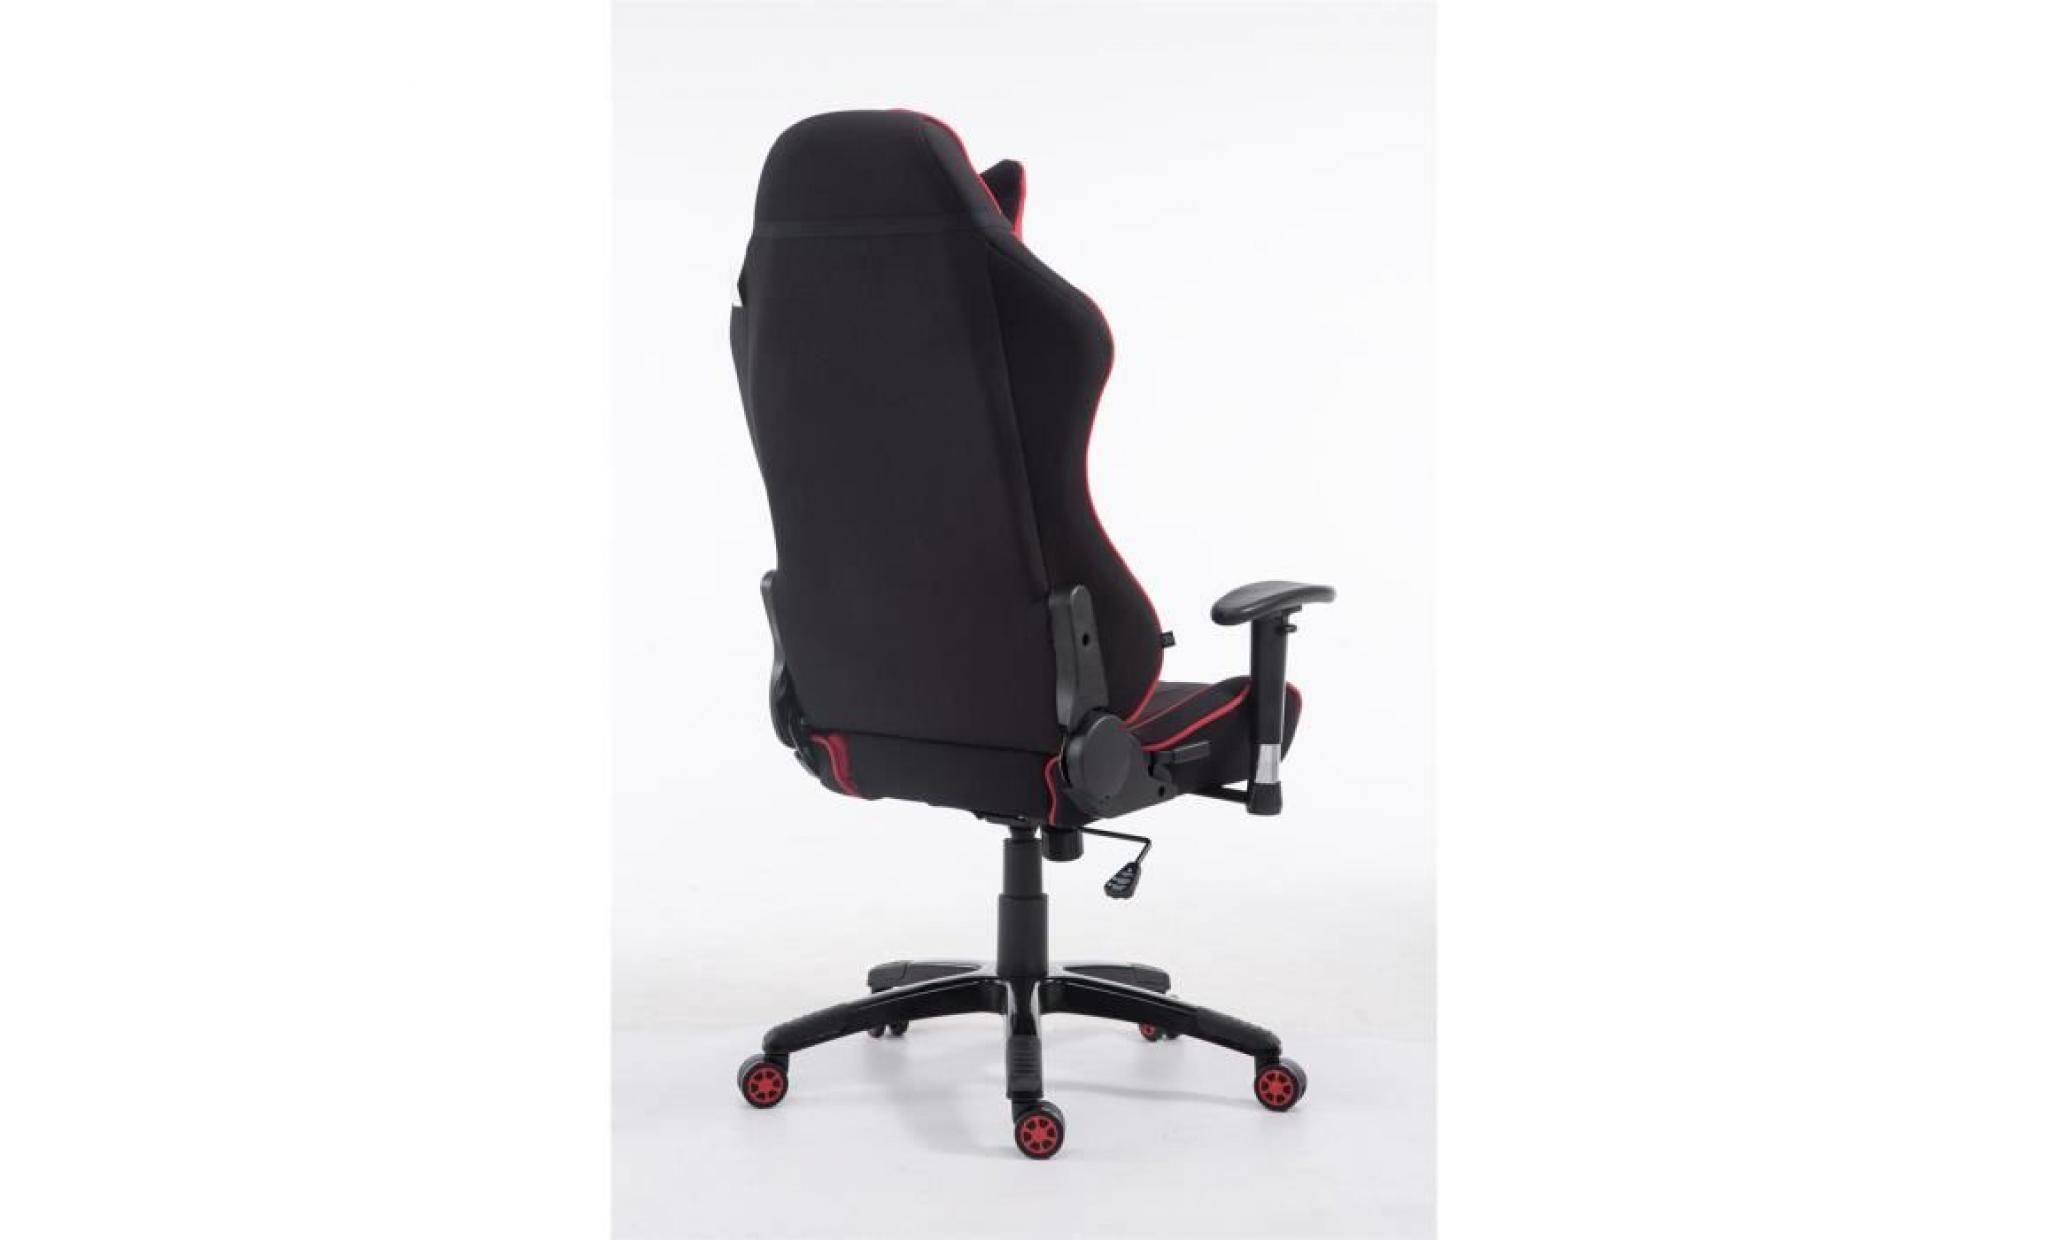 fauteuil de bureau shift xl racing, revêtement en tissu capacité de charge jusqu'à 150 kg, fauteuil de chef pas cher